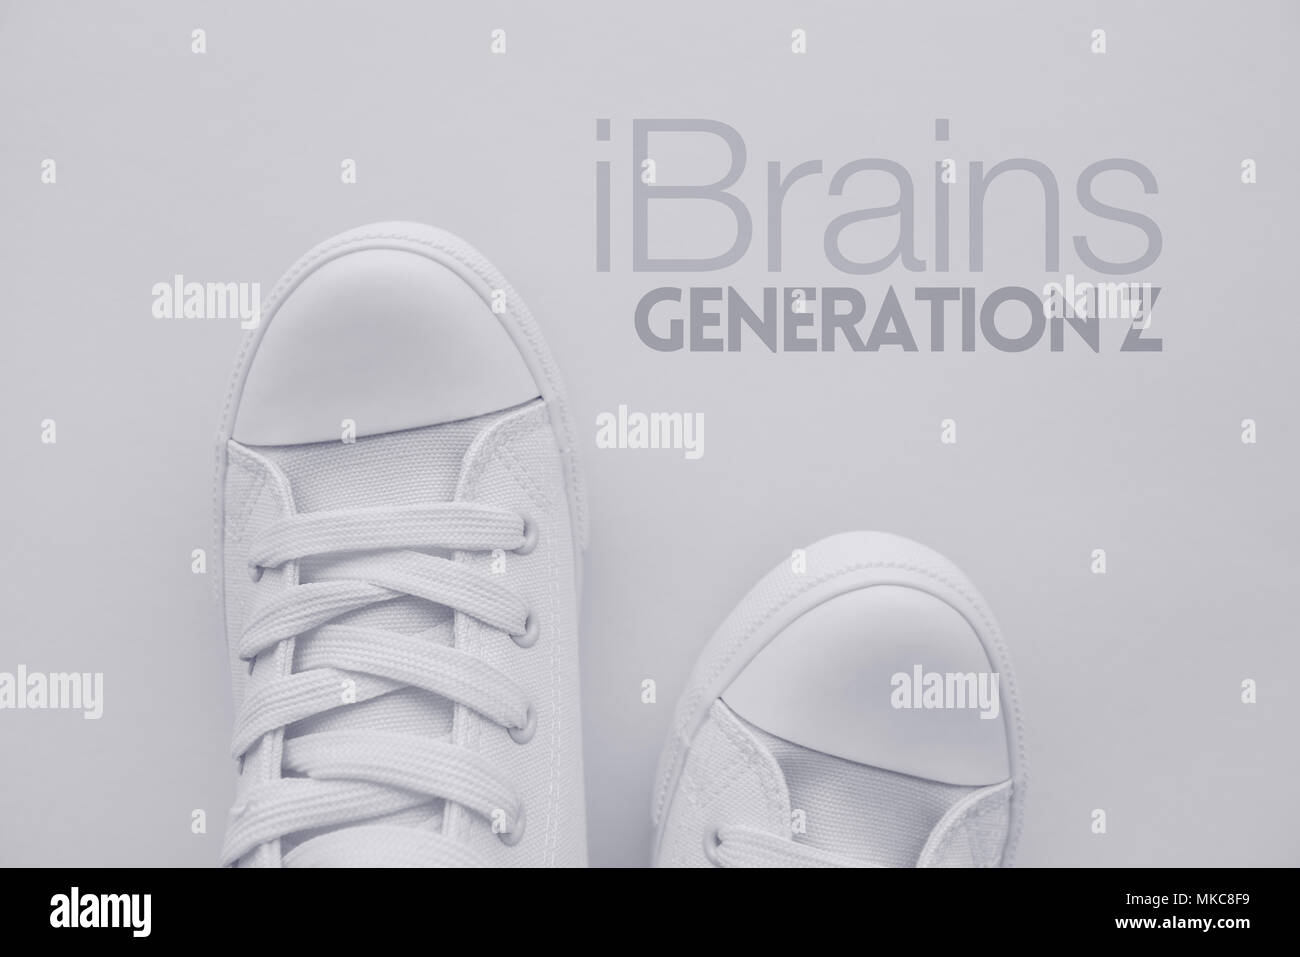 IBrains ou génération Z concept. Les états de ce qu'on appelle génération selfies occasionnels chaussures en toile blanche debout sur le titre, vue du dessus Banque D'Images